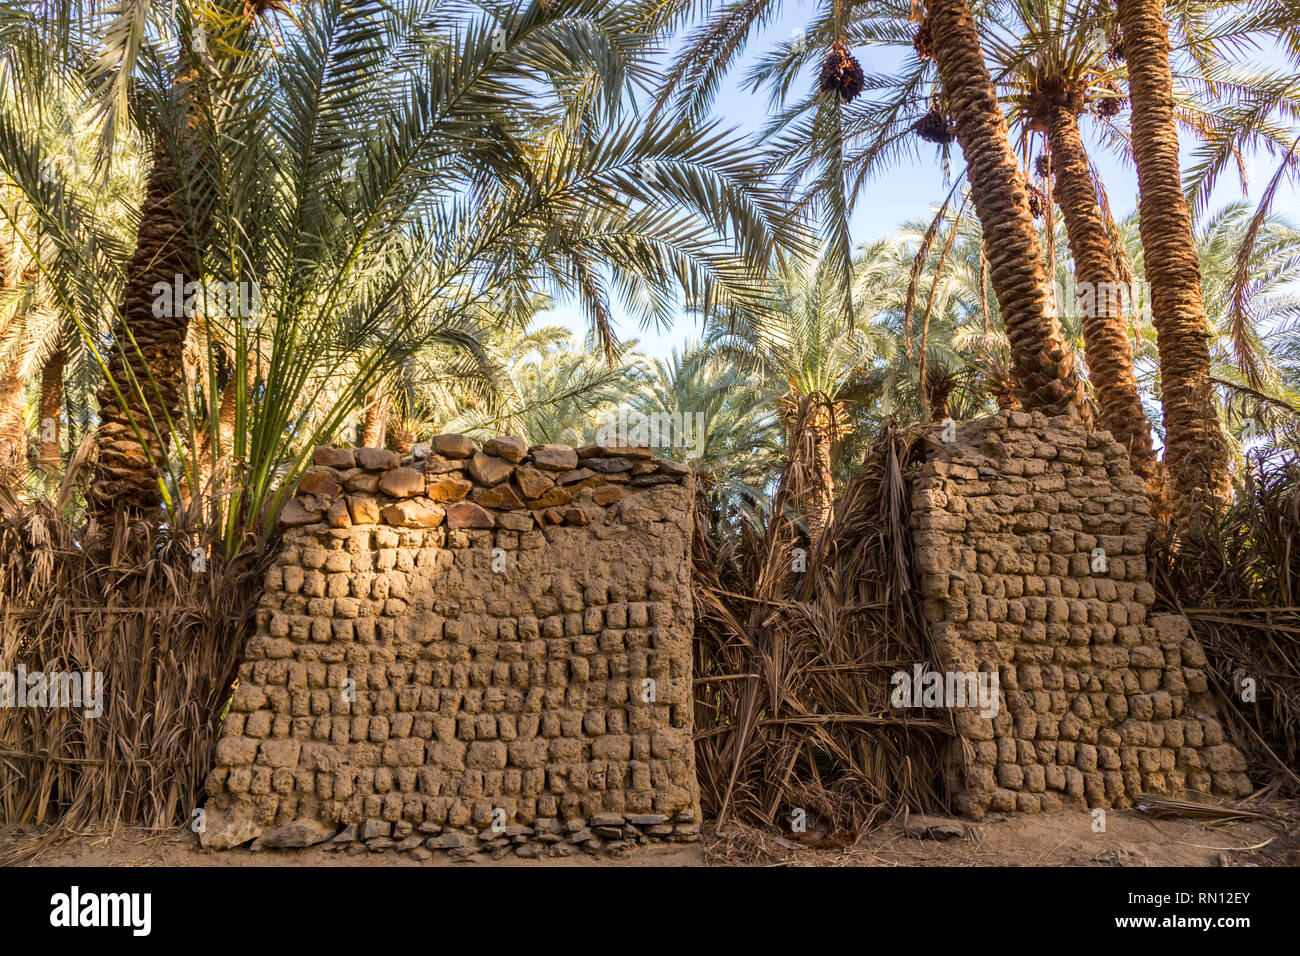 Un vieux bâtiment traditionnel en terre cuite, murs de chaume et de briques d'adobe dans les jardins de dattiers près de El-Bawiti ville, en oasis de Bahariya, à l'Ouest Banque D'Images